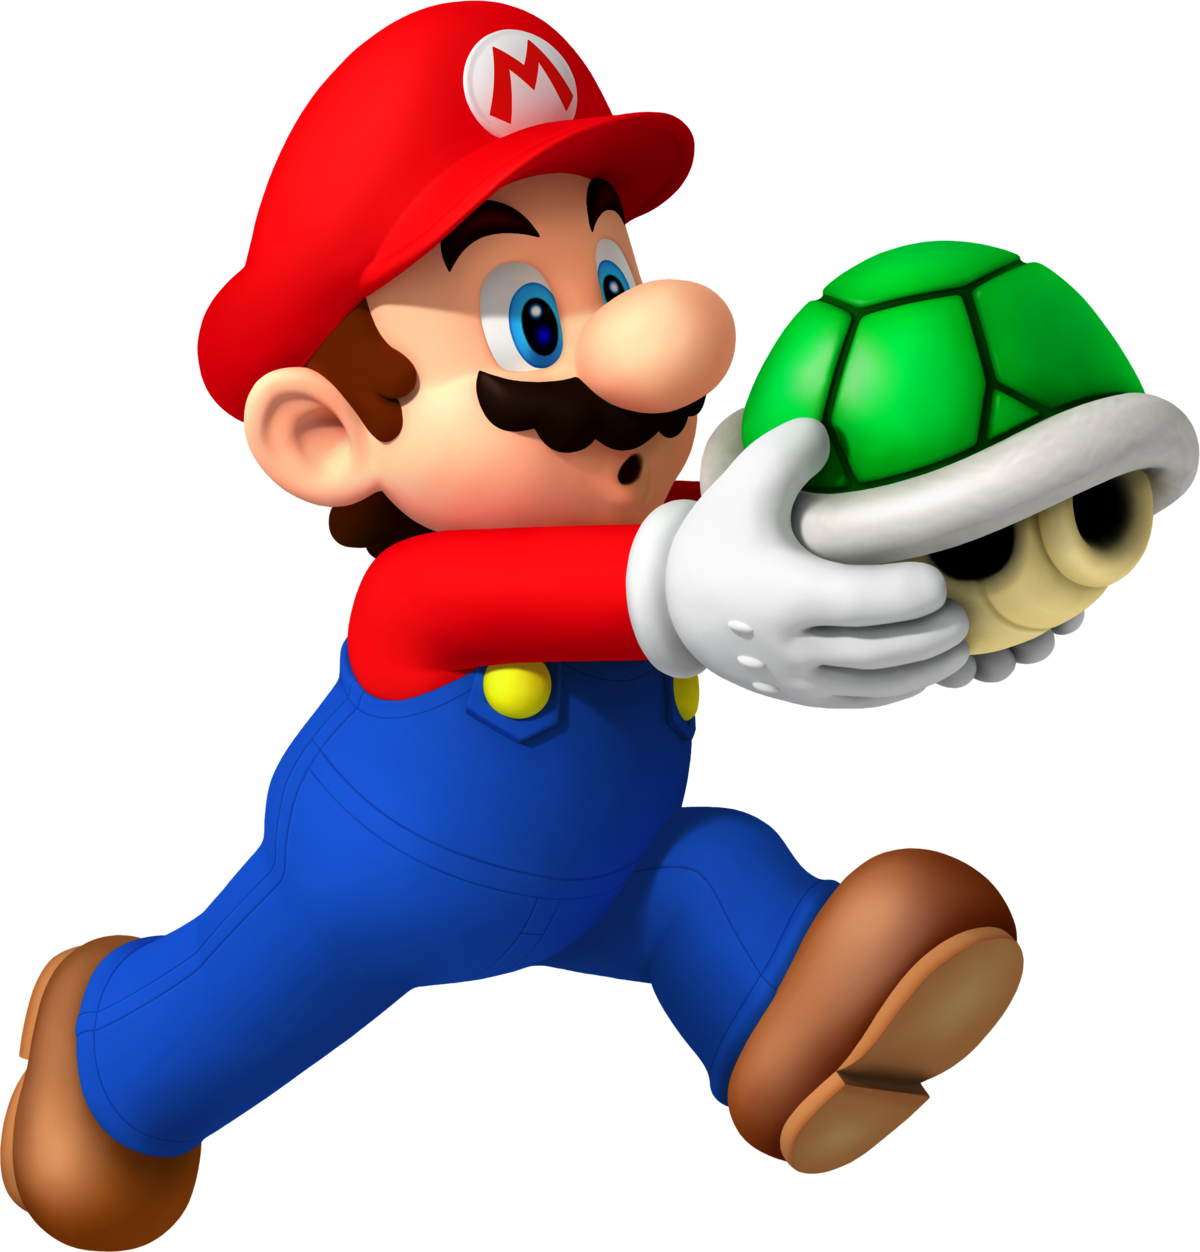 Filensmbw Mario Holding Green Shell Artworkpng Super Mario Wiki The Mario Encyclopedia 8461